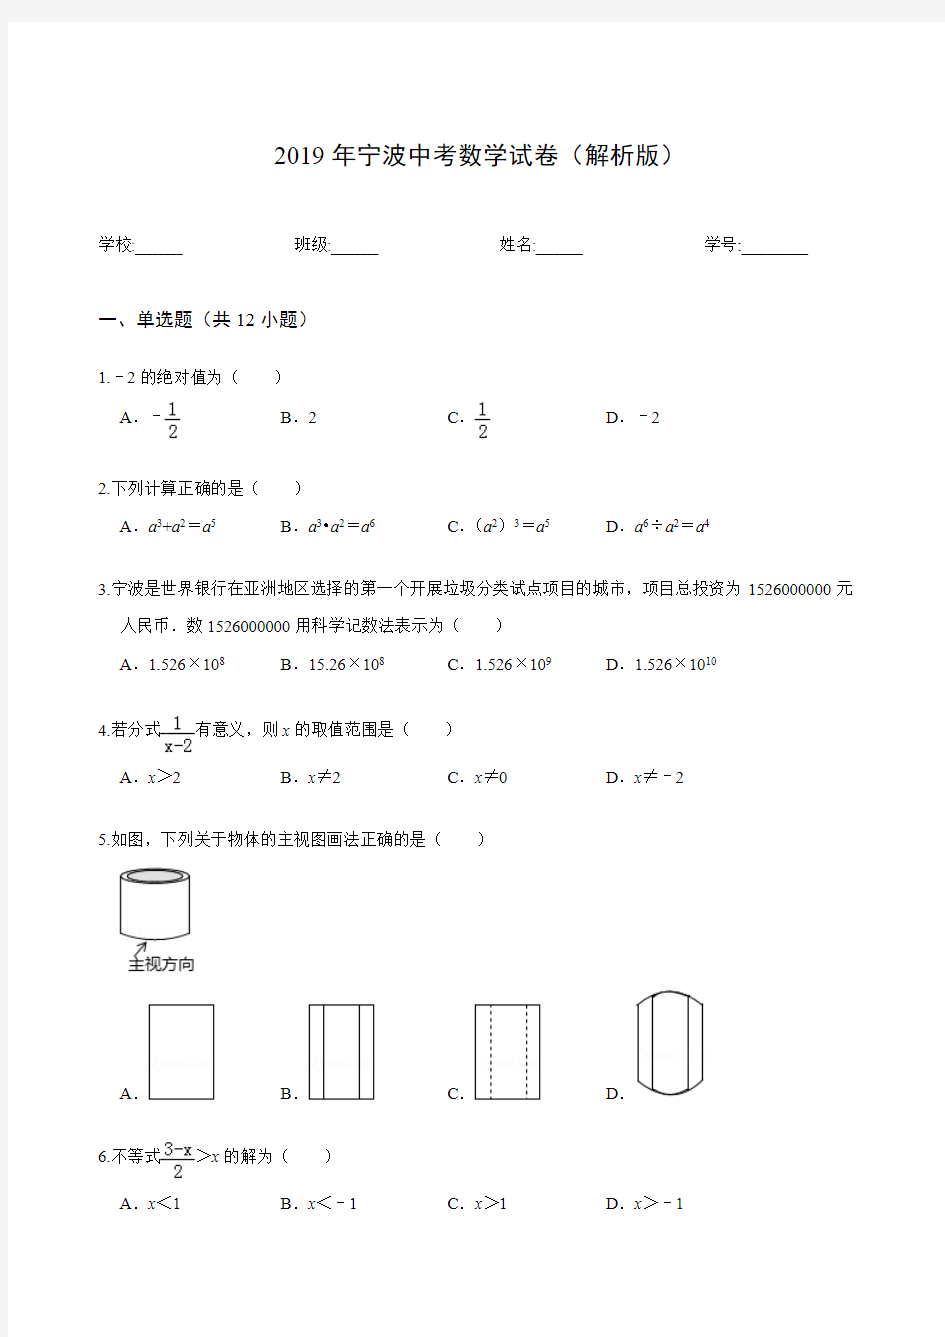 (完整版)2019年宁波中考数学试卷(解析版)